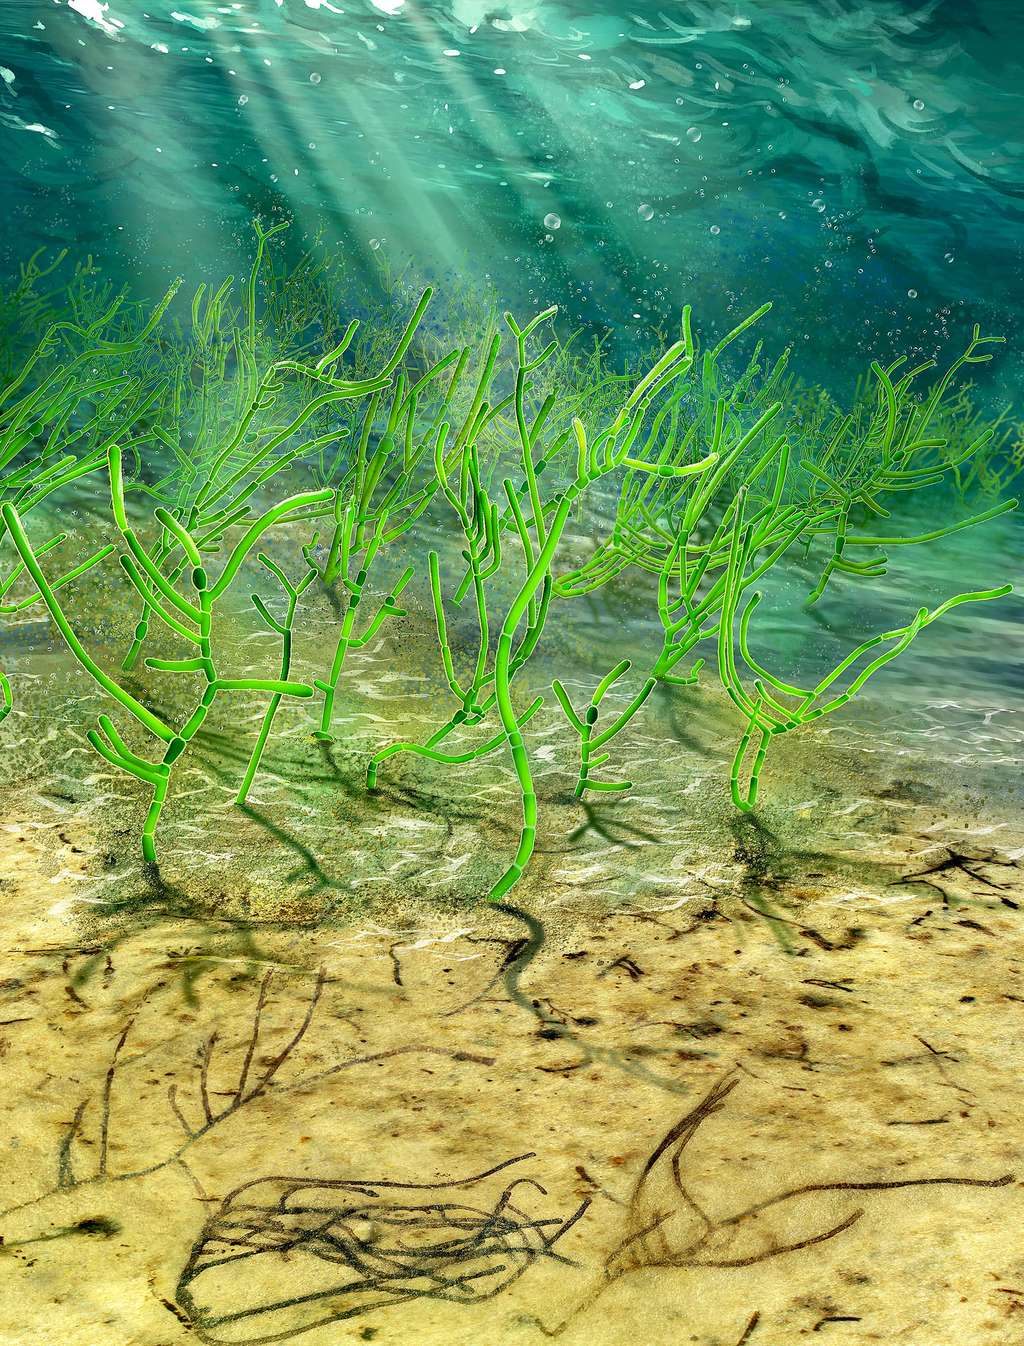 <i>Proterocladus antiquus</i> poussait en touffes denses au fond de l’océan, ce qui lui permettait de coloniser de grandes surfaces. © Dinghua Yang